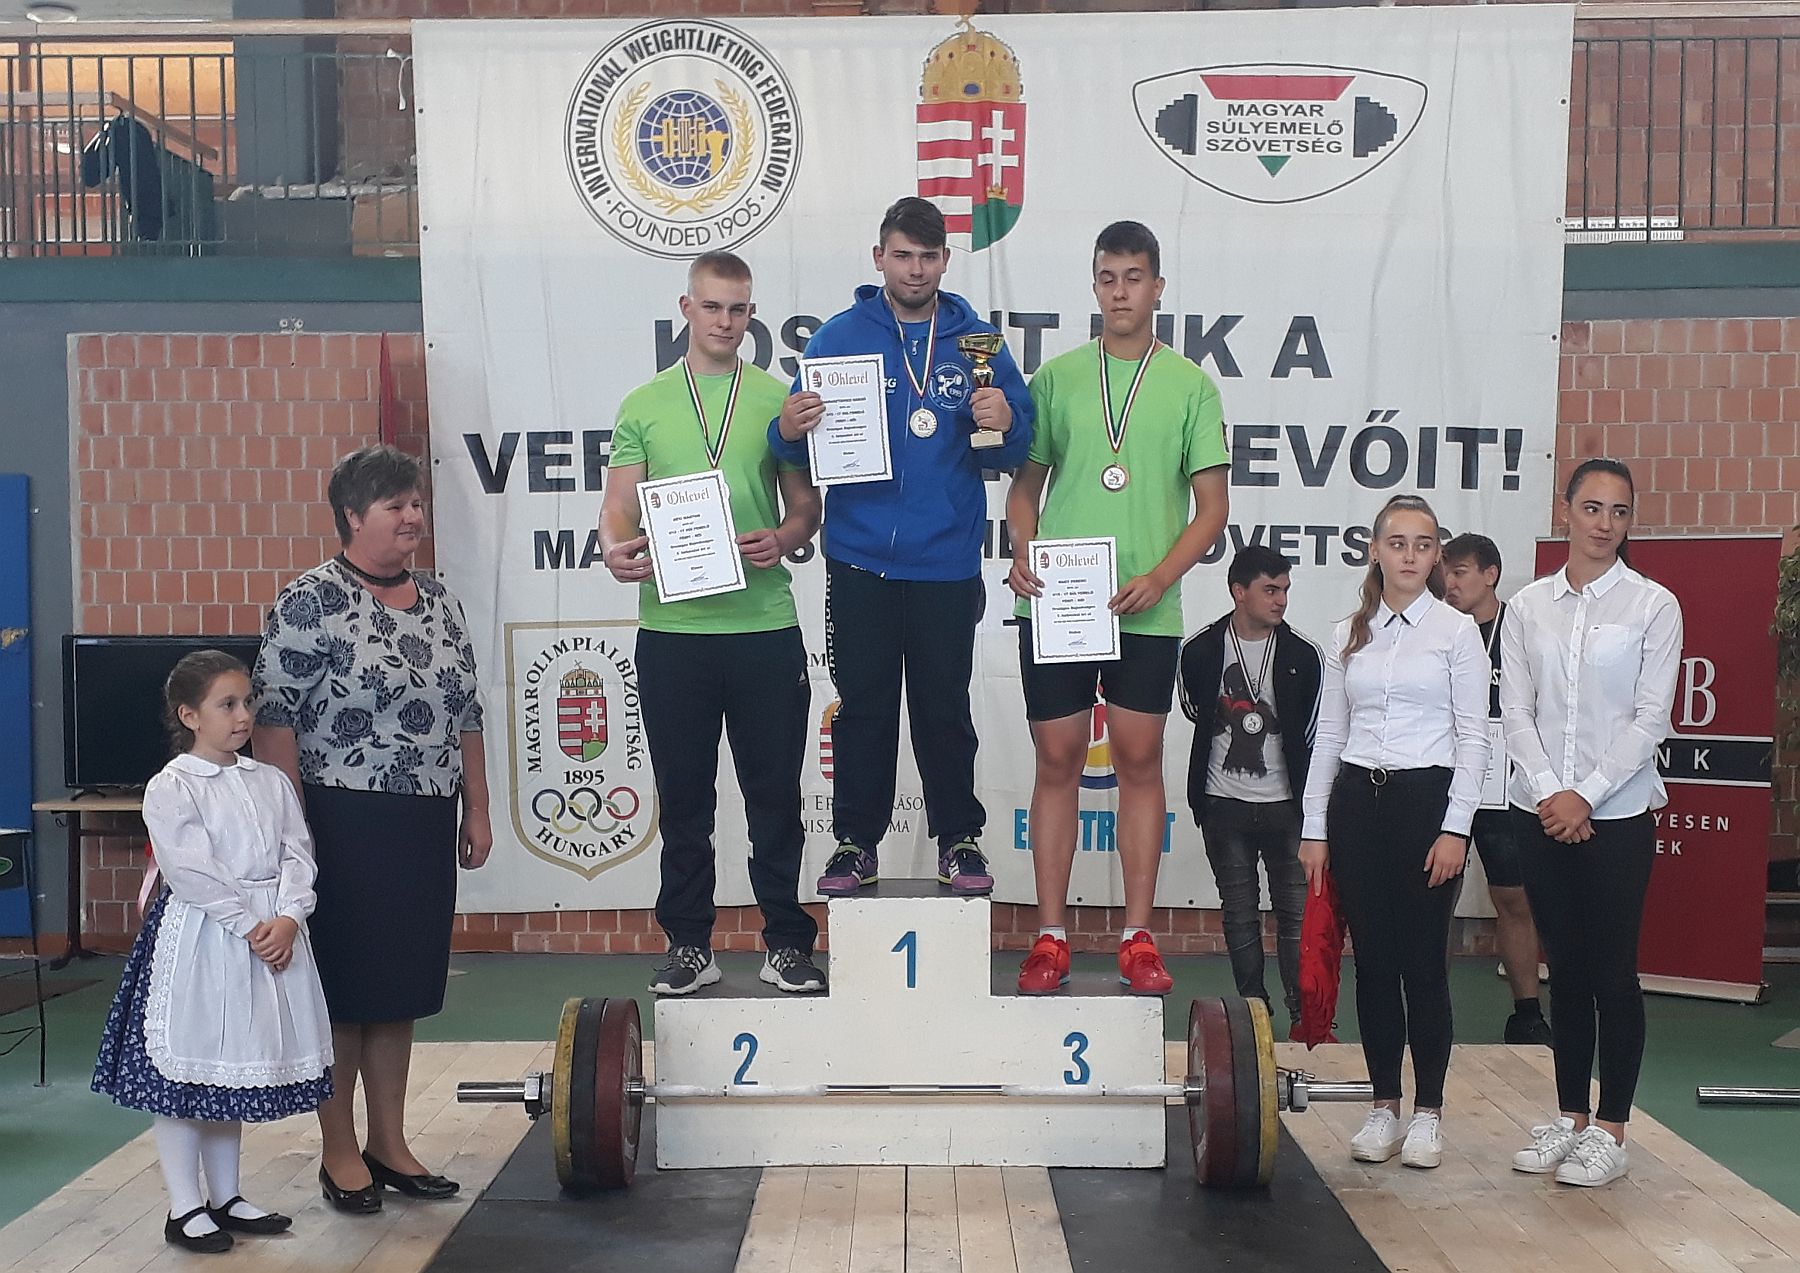 Nagy Ferenc bronzérmes lett a súlyemelők ifjúsági országos bajnokságán